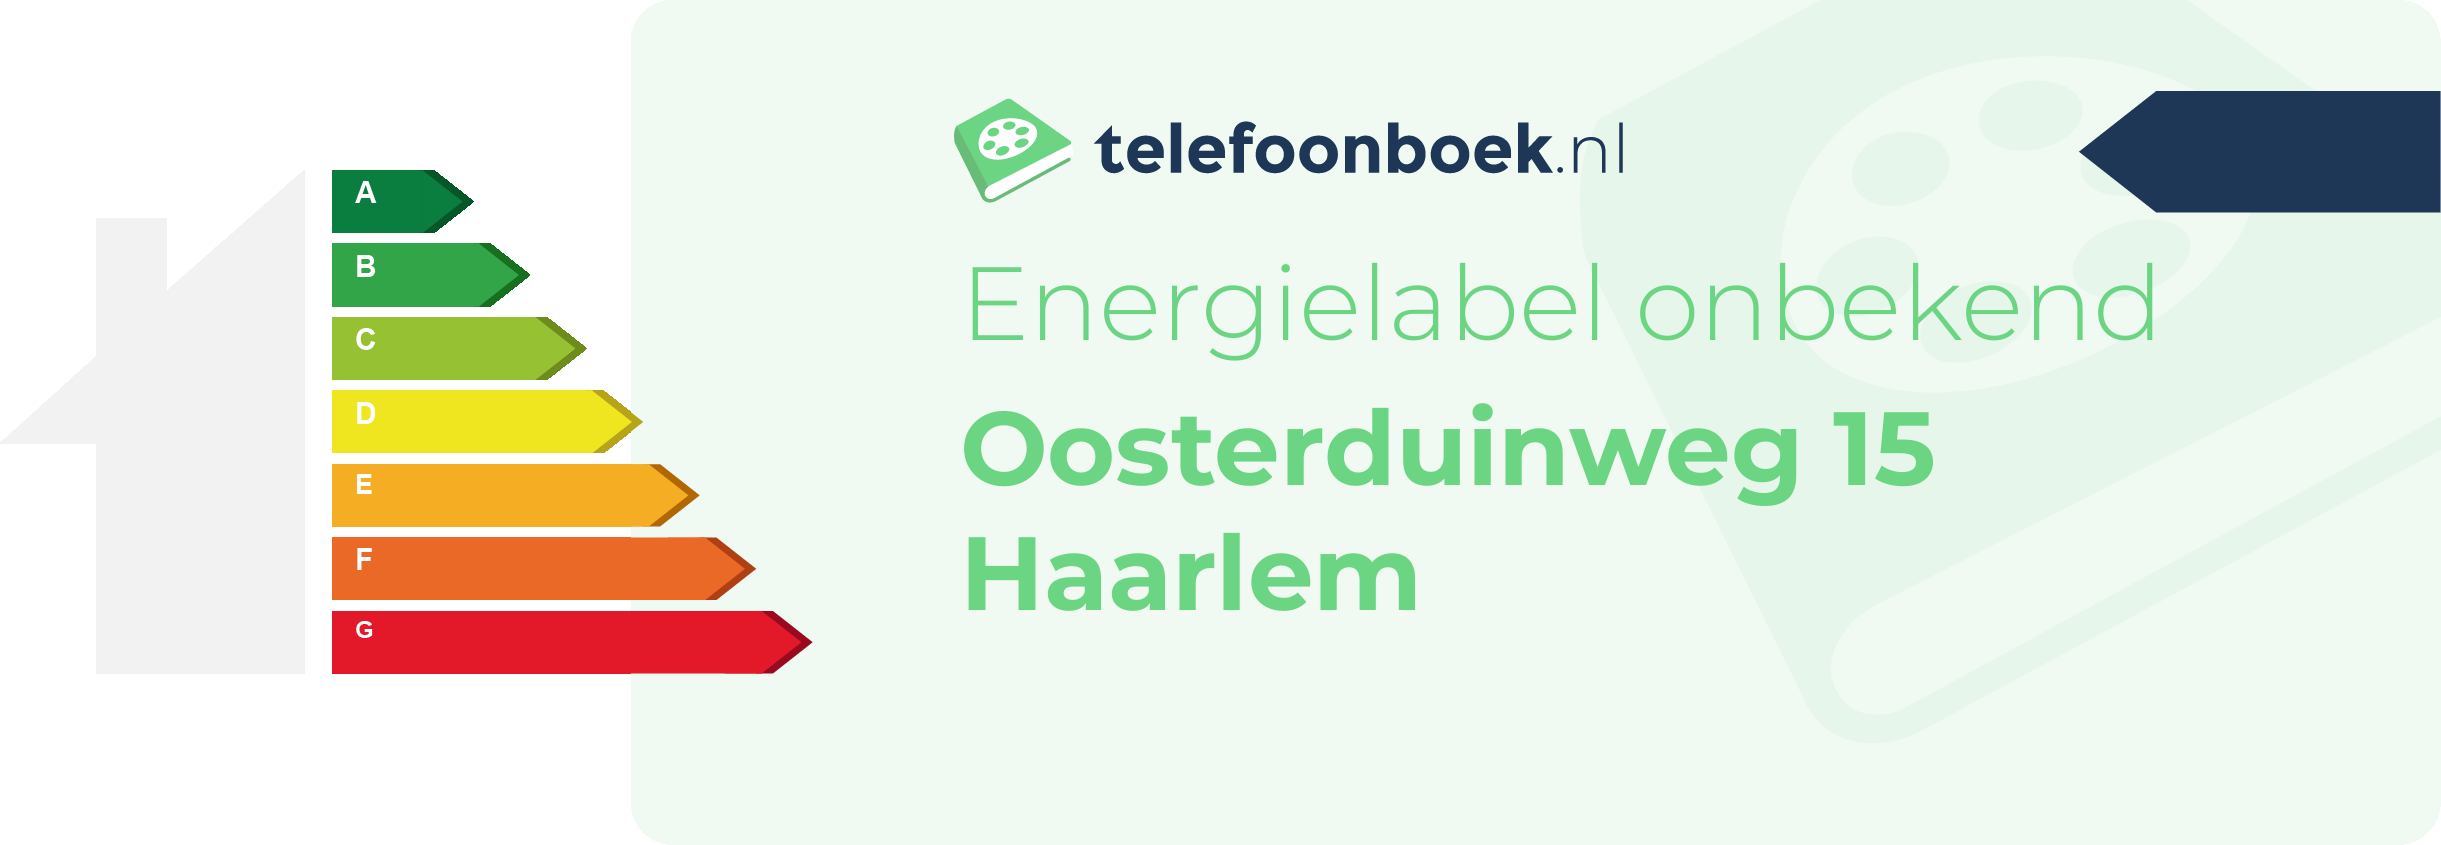 Energielabel Oosterduinweg 15 Haarlem